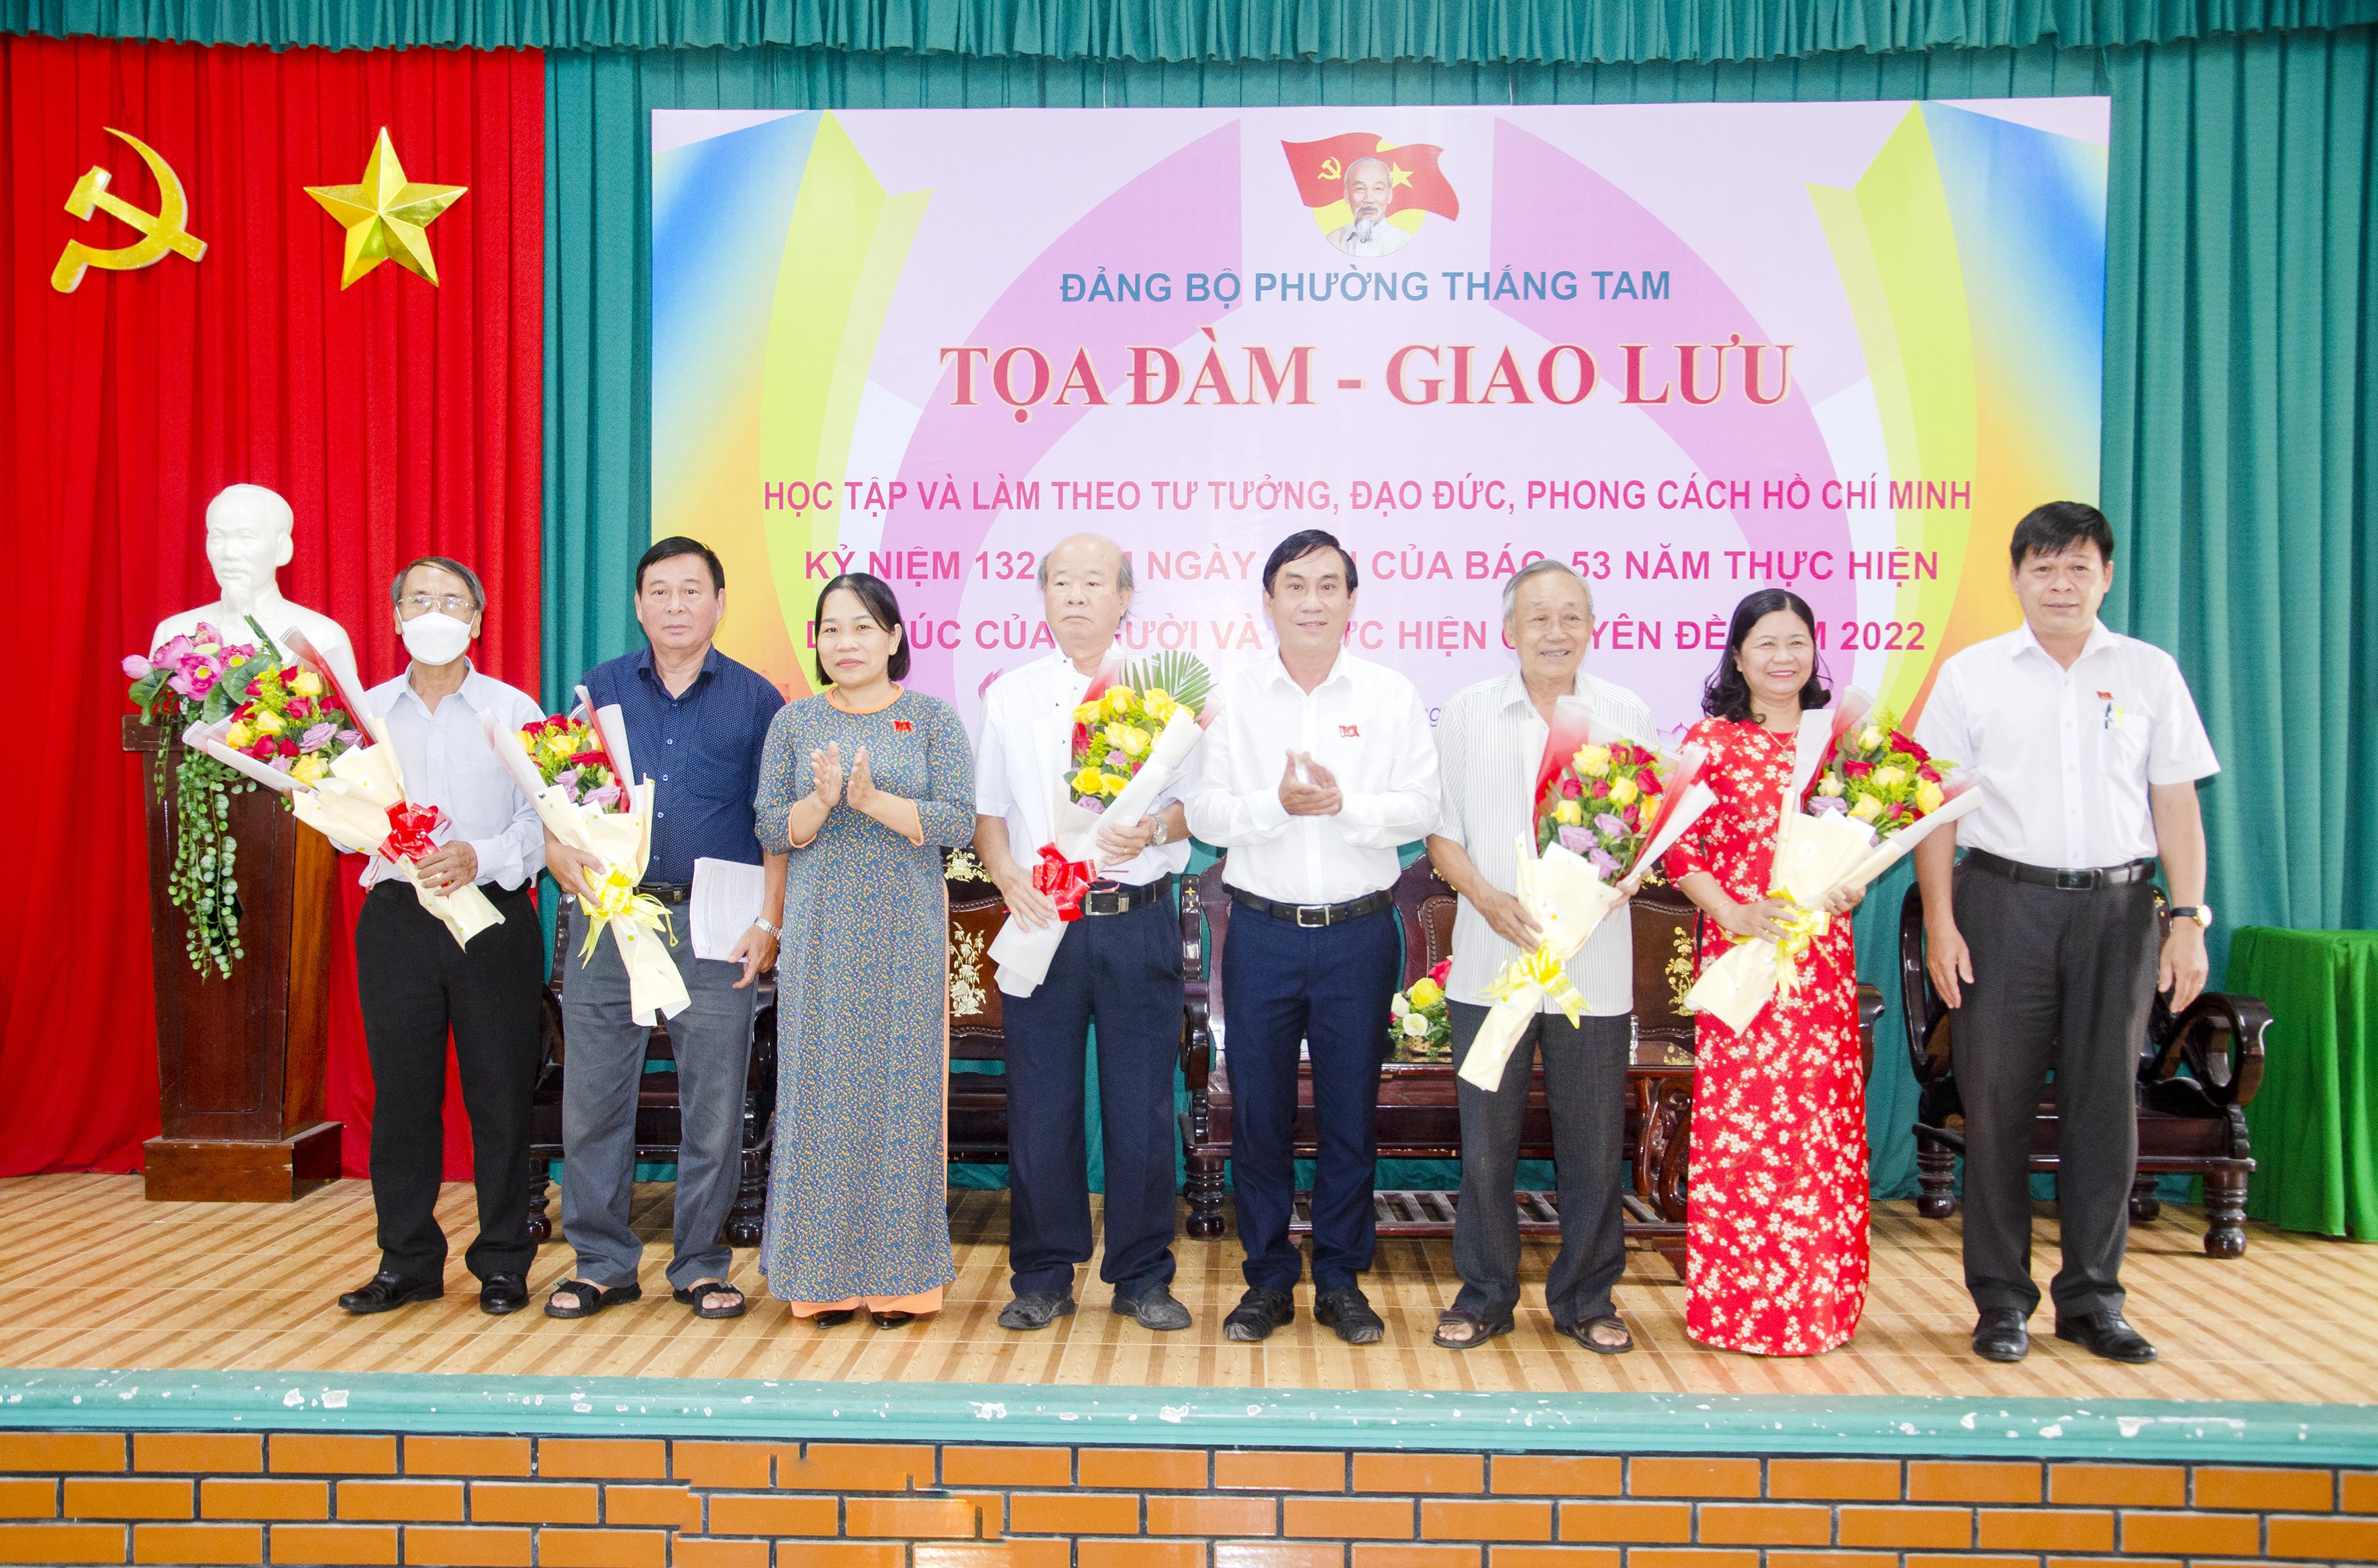 Lãnh đạo phường Thắng Tam tặng hoa cảm ơn các cá nhân tiêu biểu “Học tập và làm theo tư tưởng, đạo đức, phong cách Hồ Chí Minh” tại chương trình tọa đàm, giao lưu.